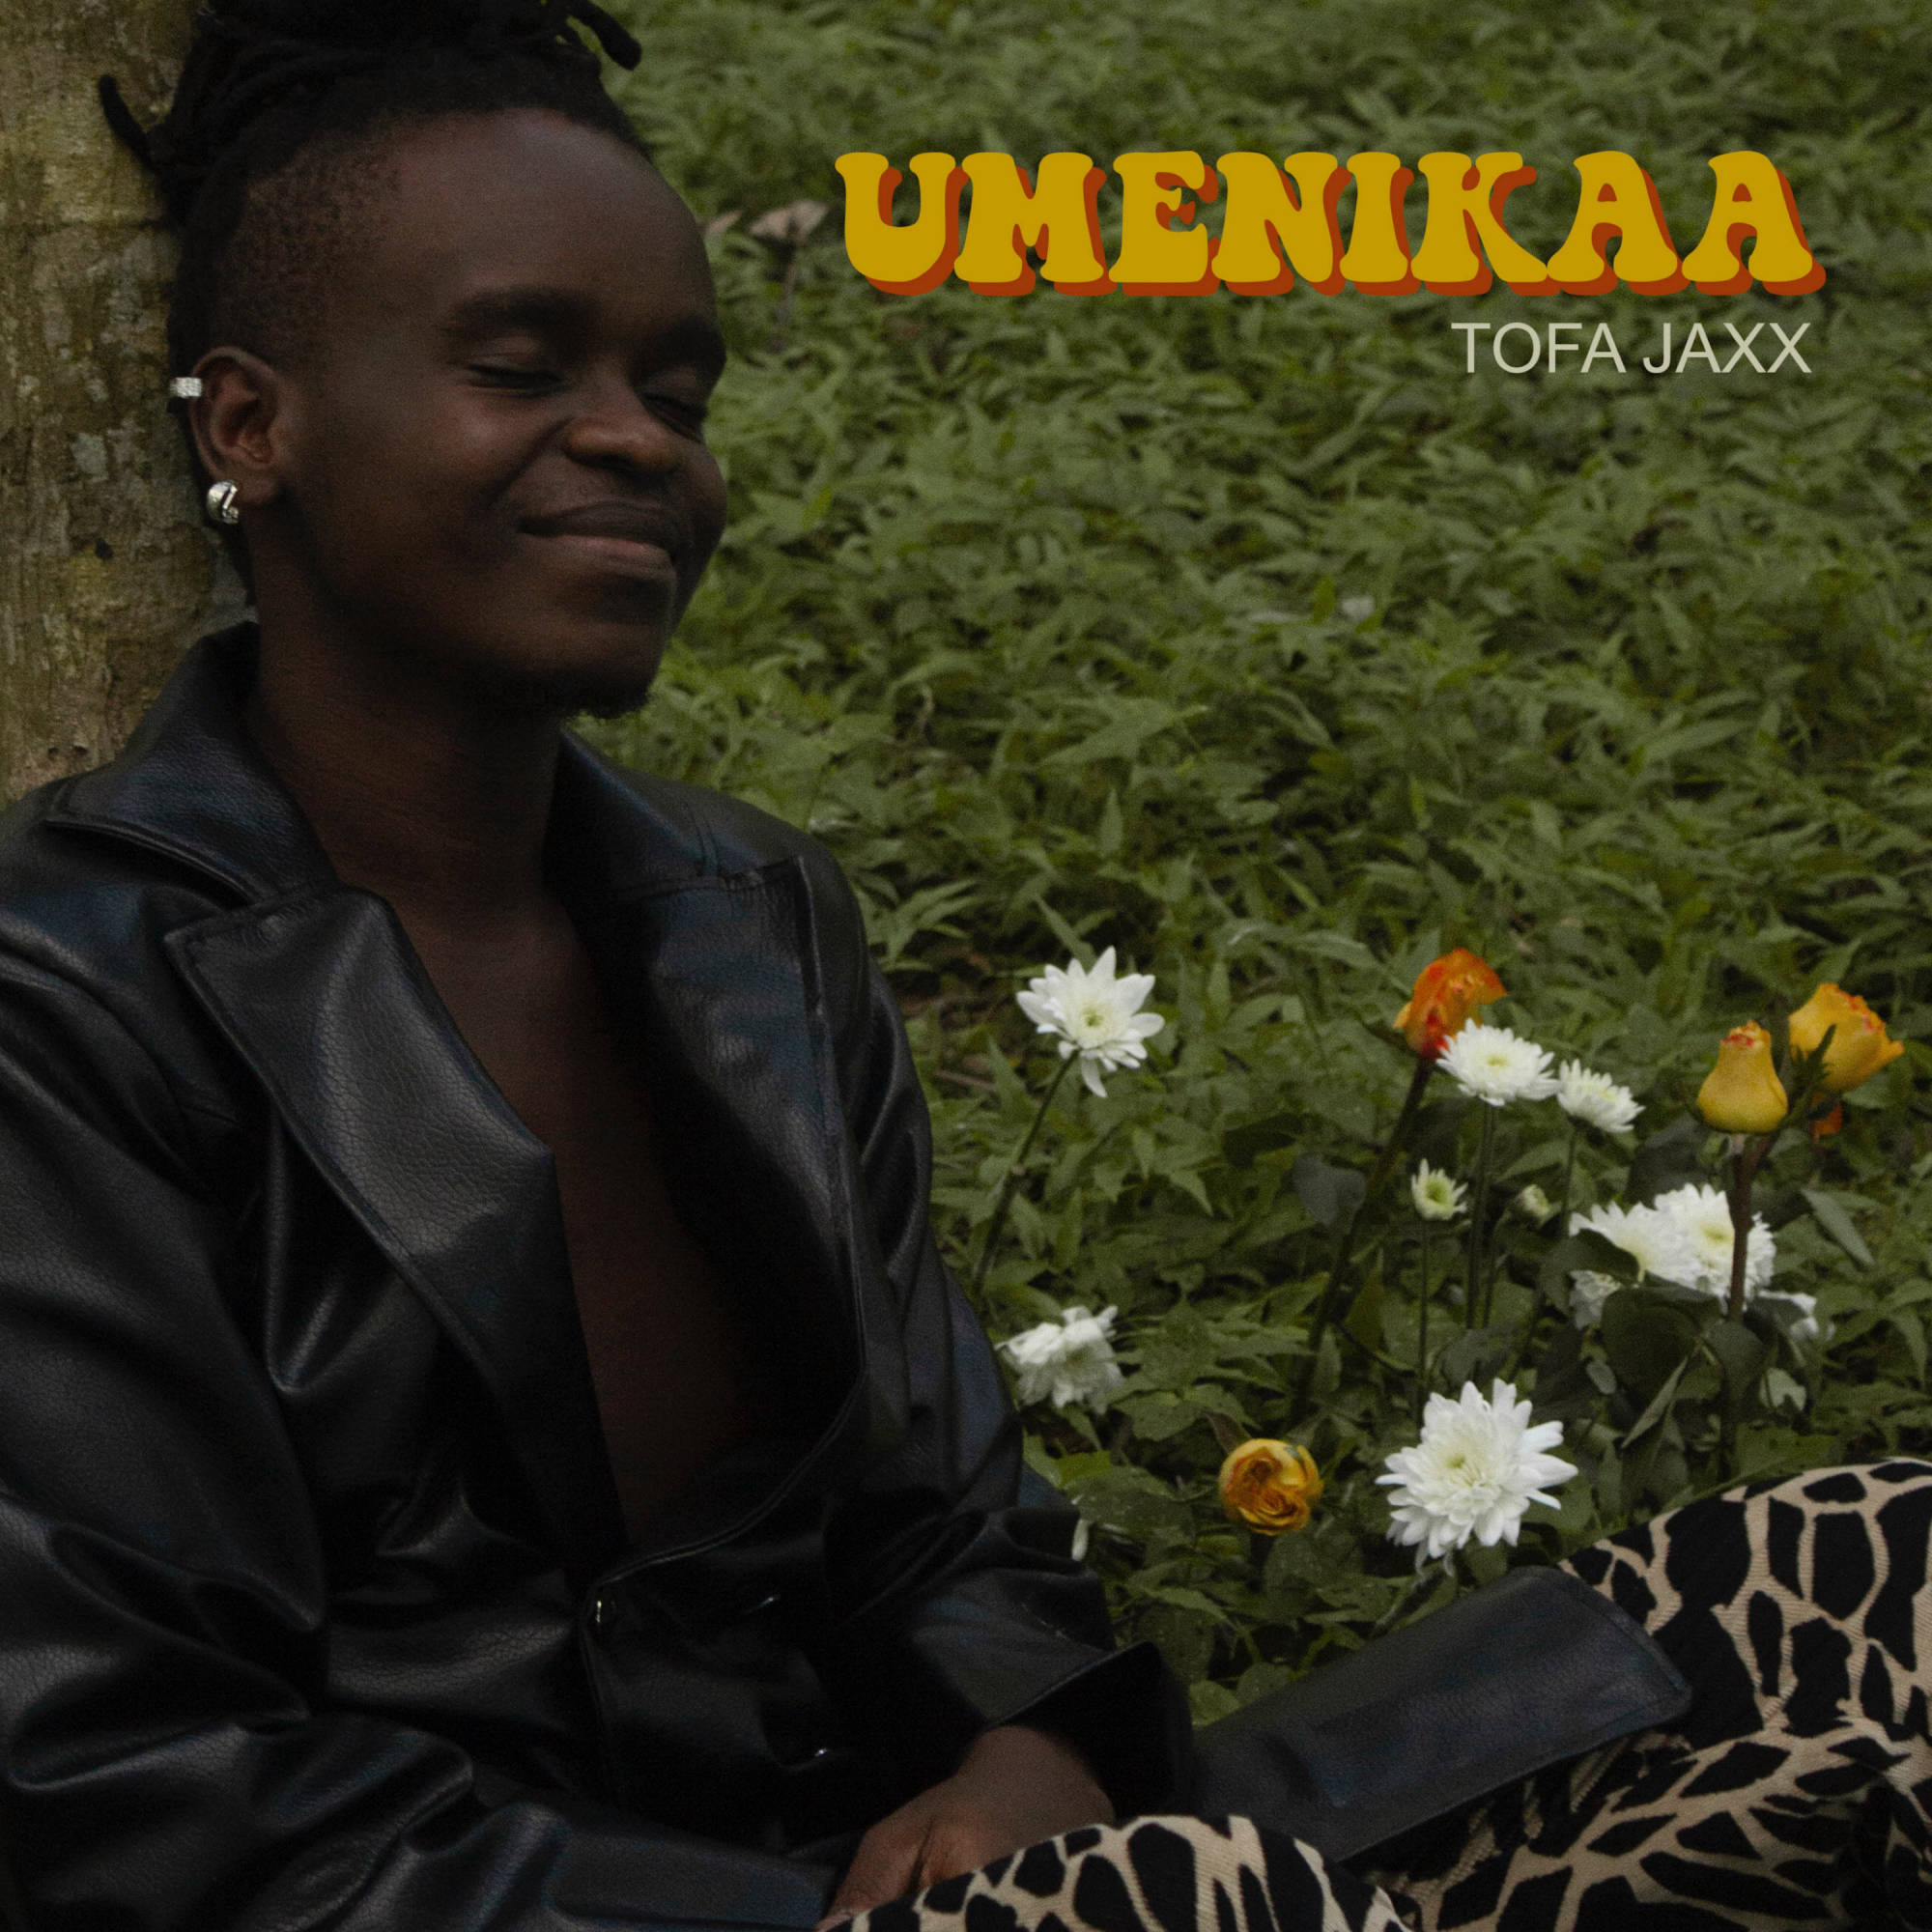 Umenikaa - Tofa Jaxx